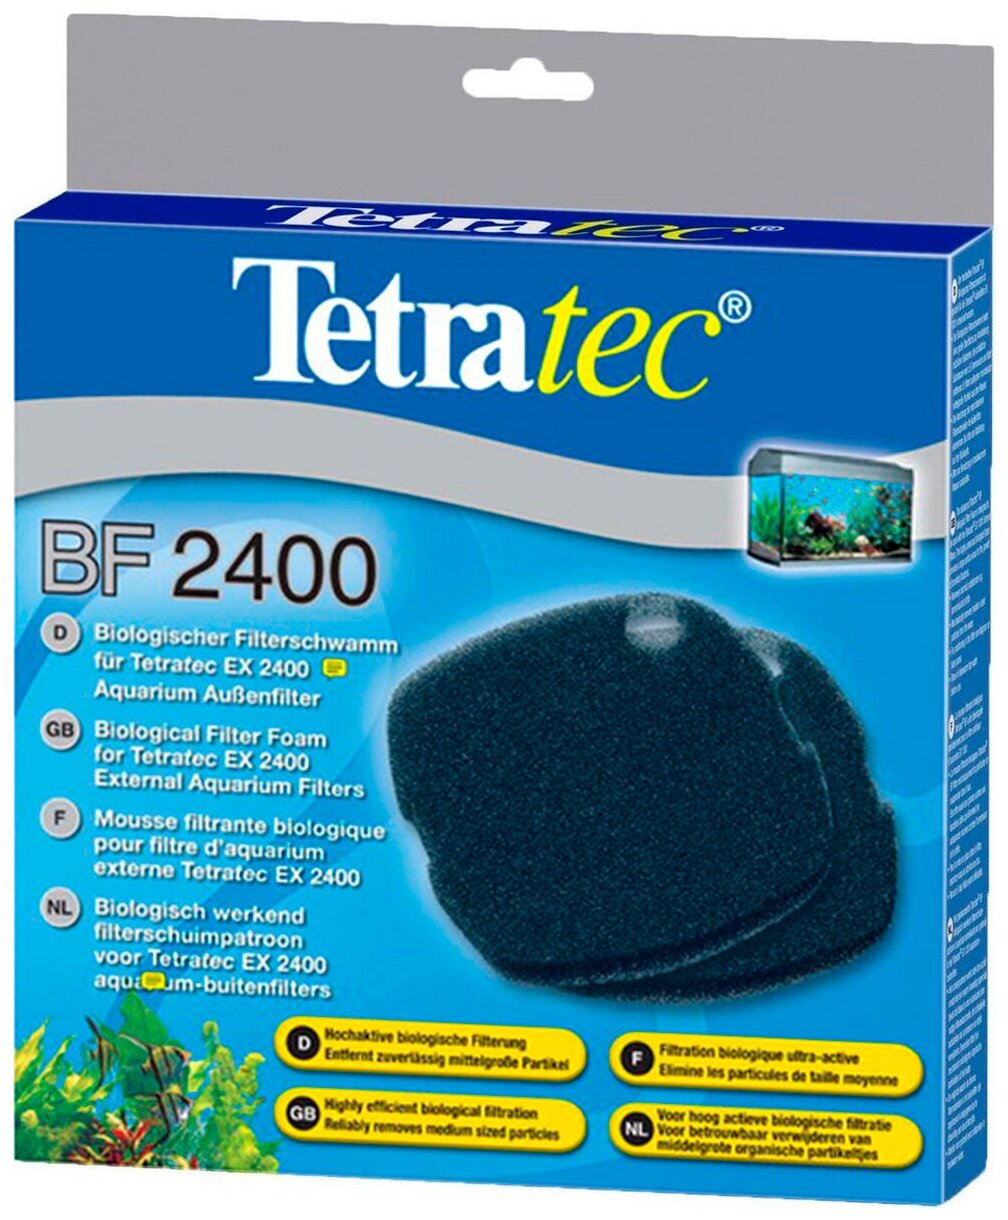 Наполнитель для фильтра Tetra BF 2400 губка для био-фильтрации уп. 2 шт (1 шт)